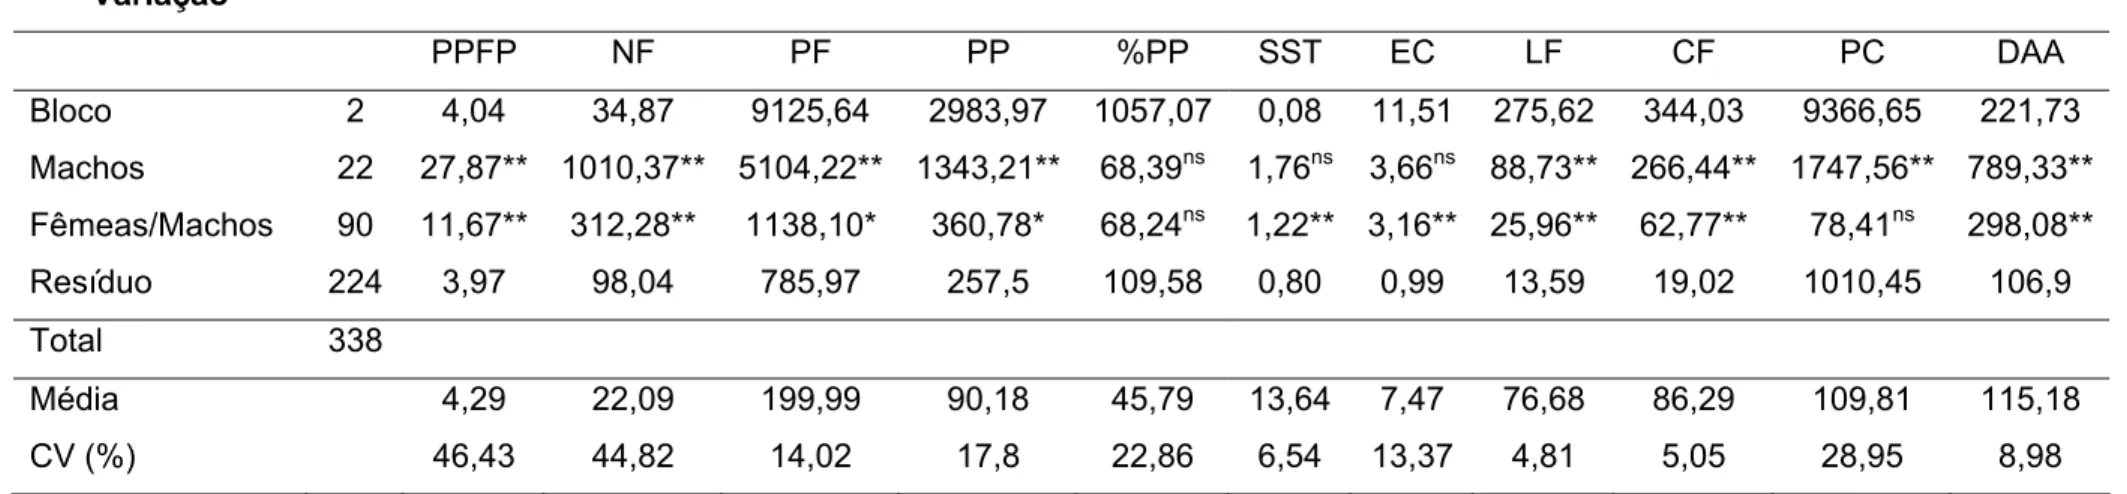 Tabela 1: Resumo da análise de variância das características PPFP, NF, PF, PP, %PP, SST, EC, LF, CF, PC, e DAA em 113  famílias de maracujazeiro amarelo